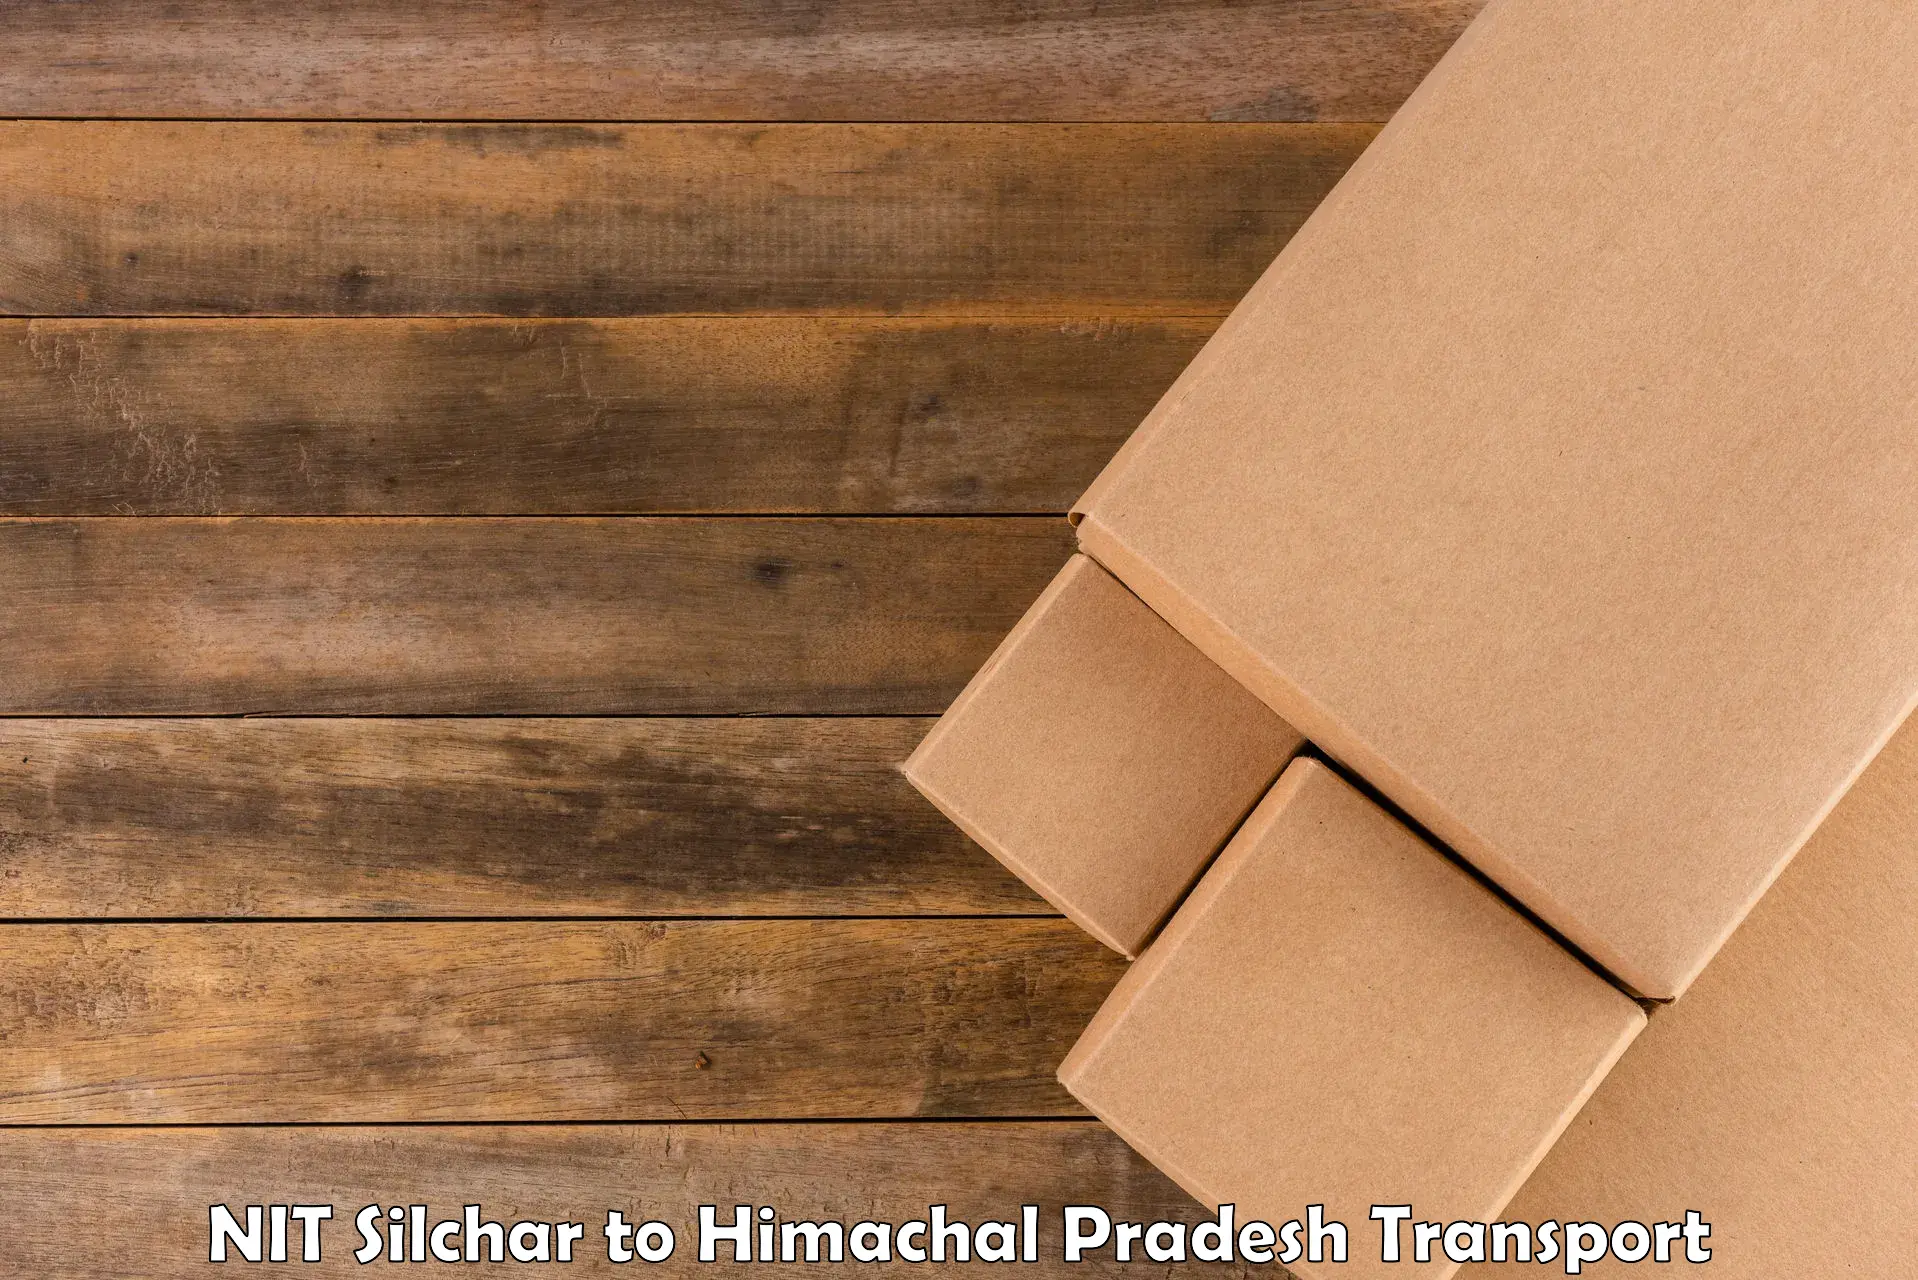 Furniture transport service NIT Silchar to Patlikuhal